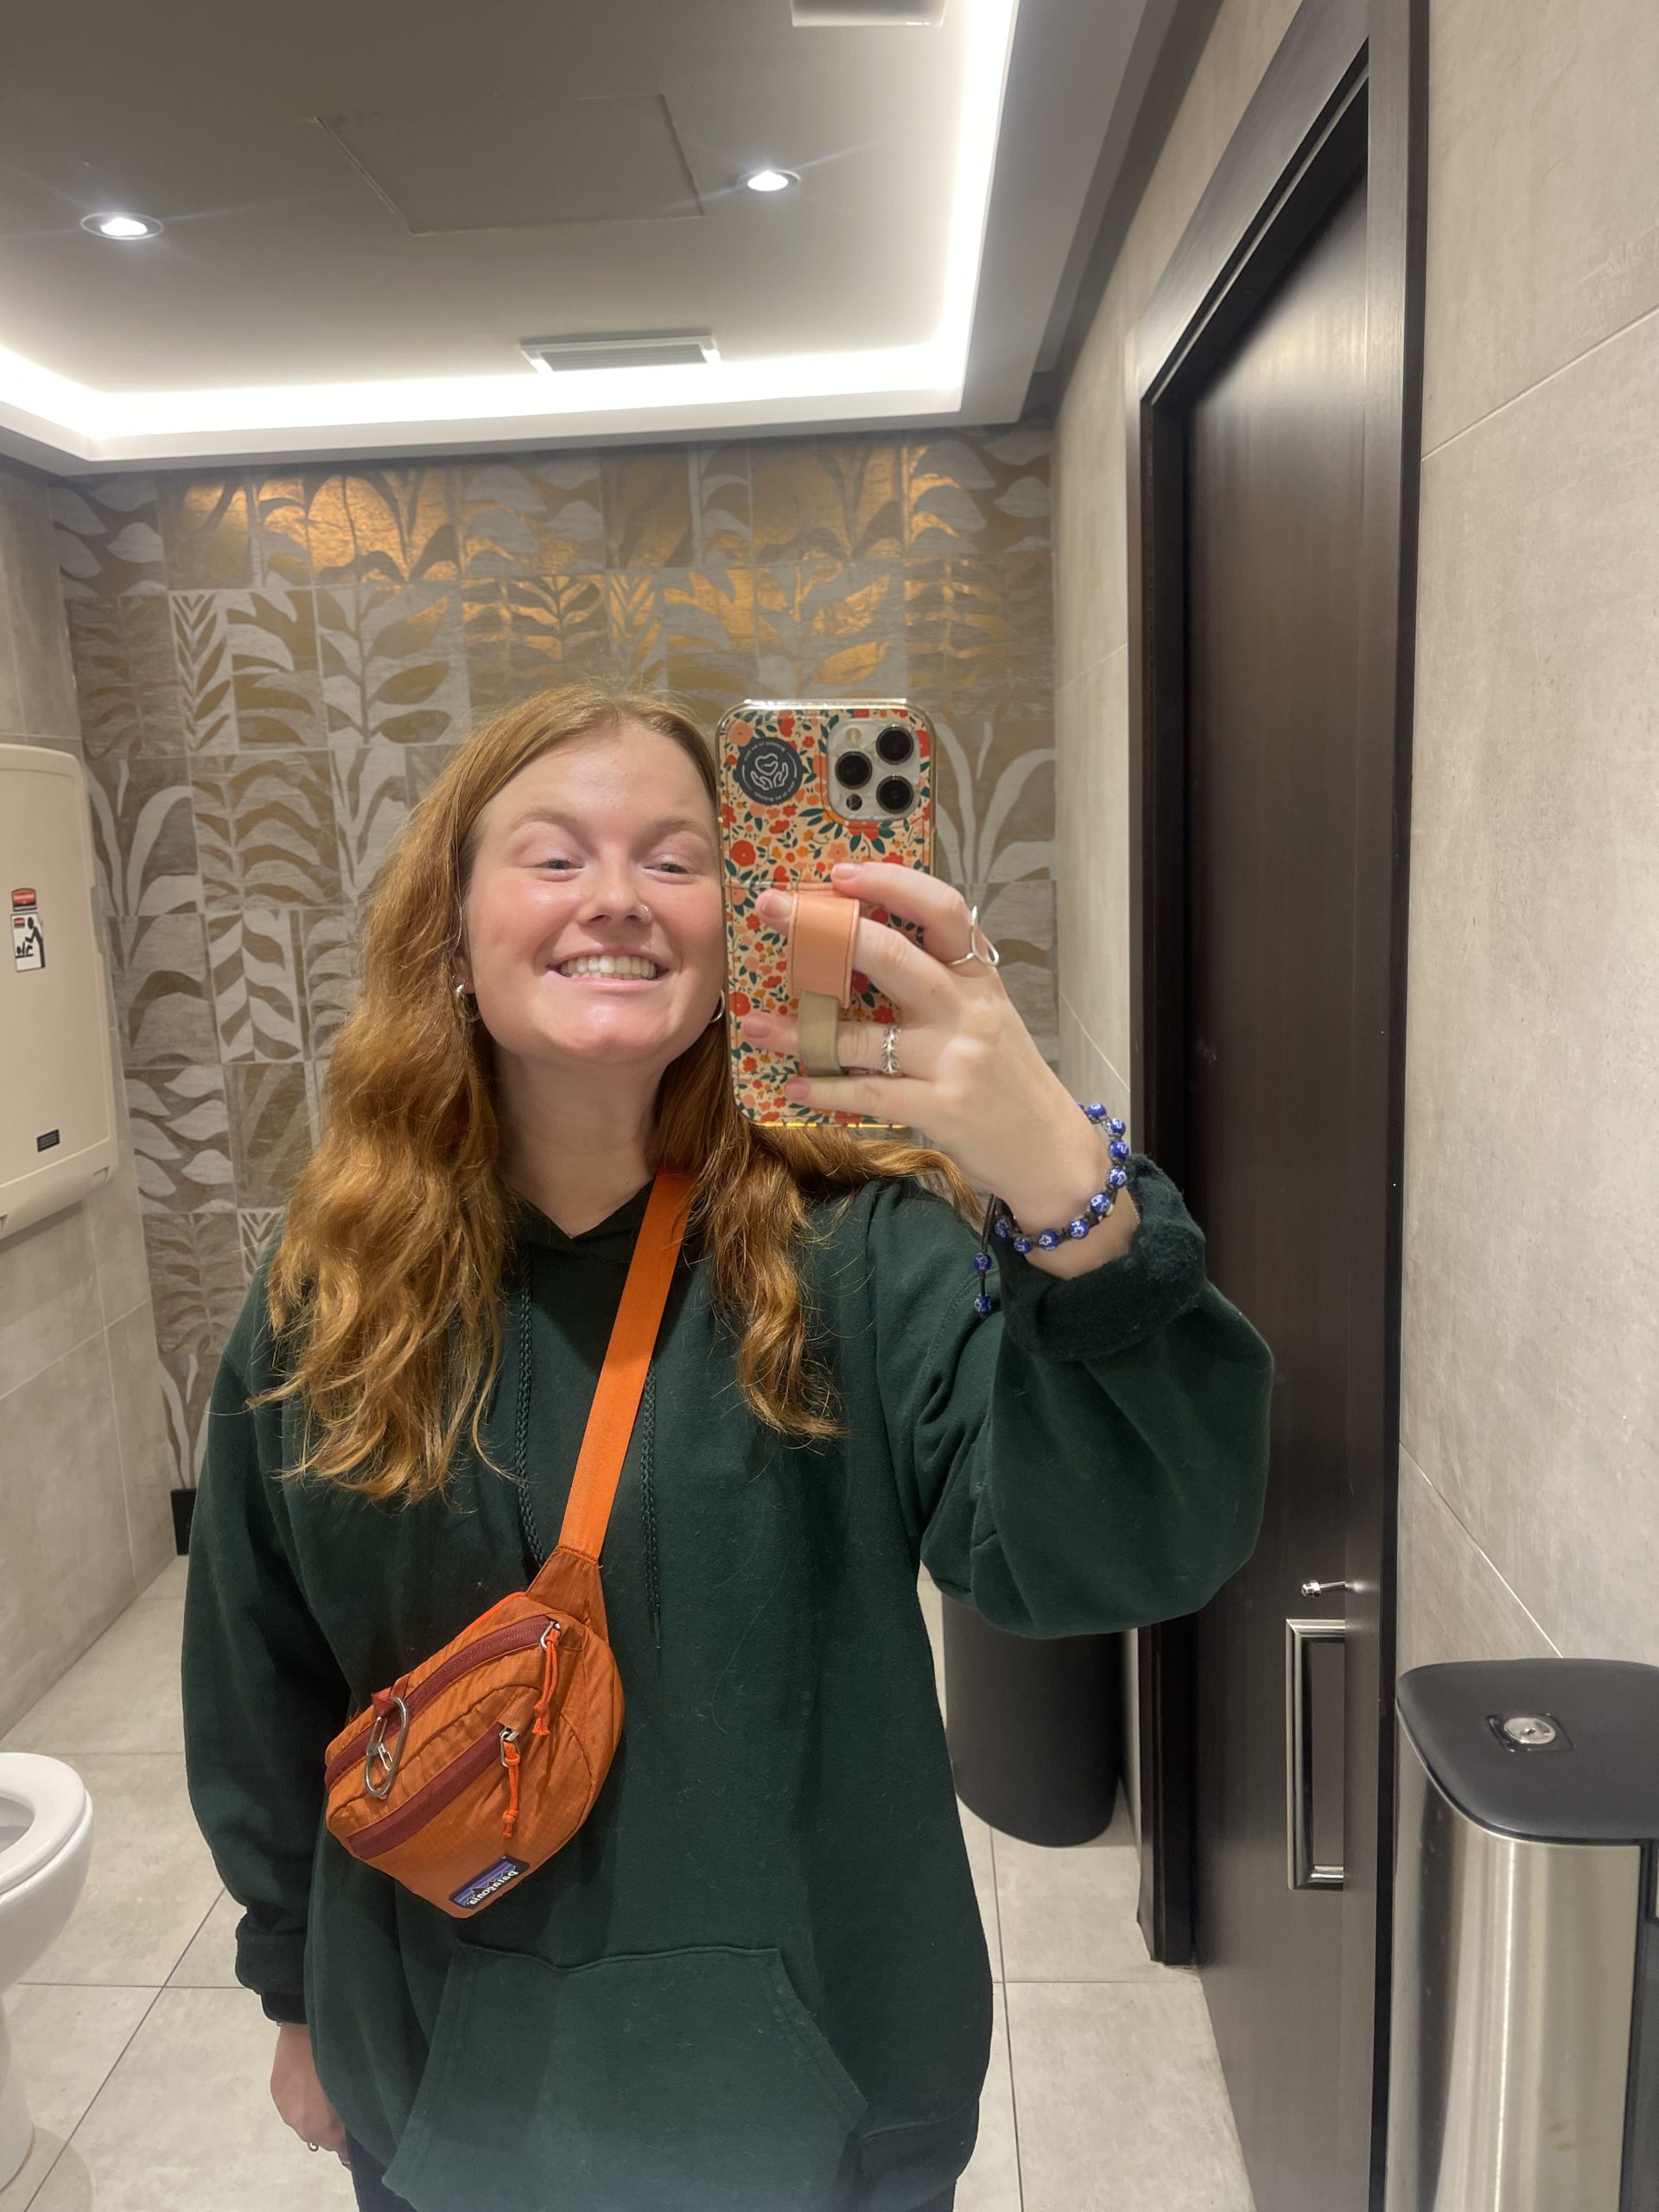 A mirror selfie in the bathroom mirror of a public restroom.